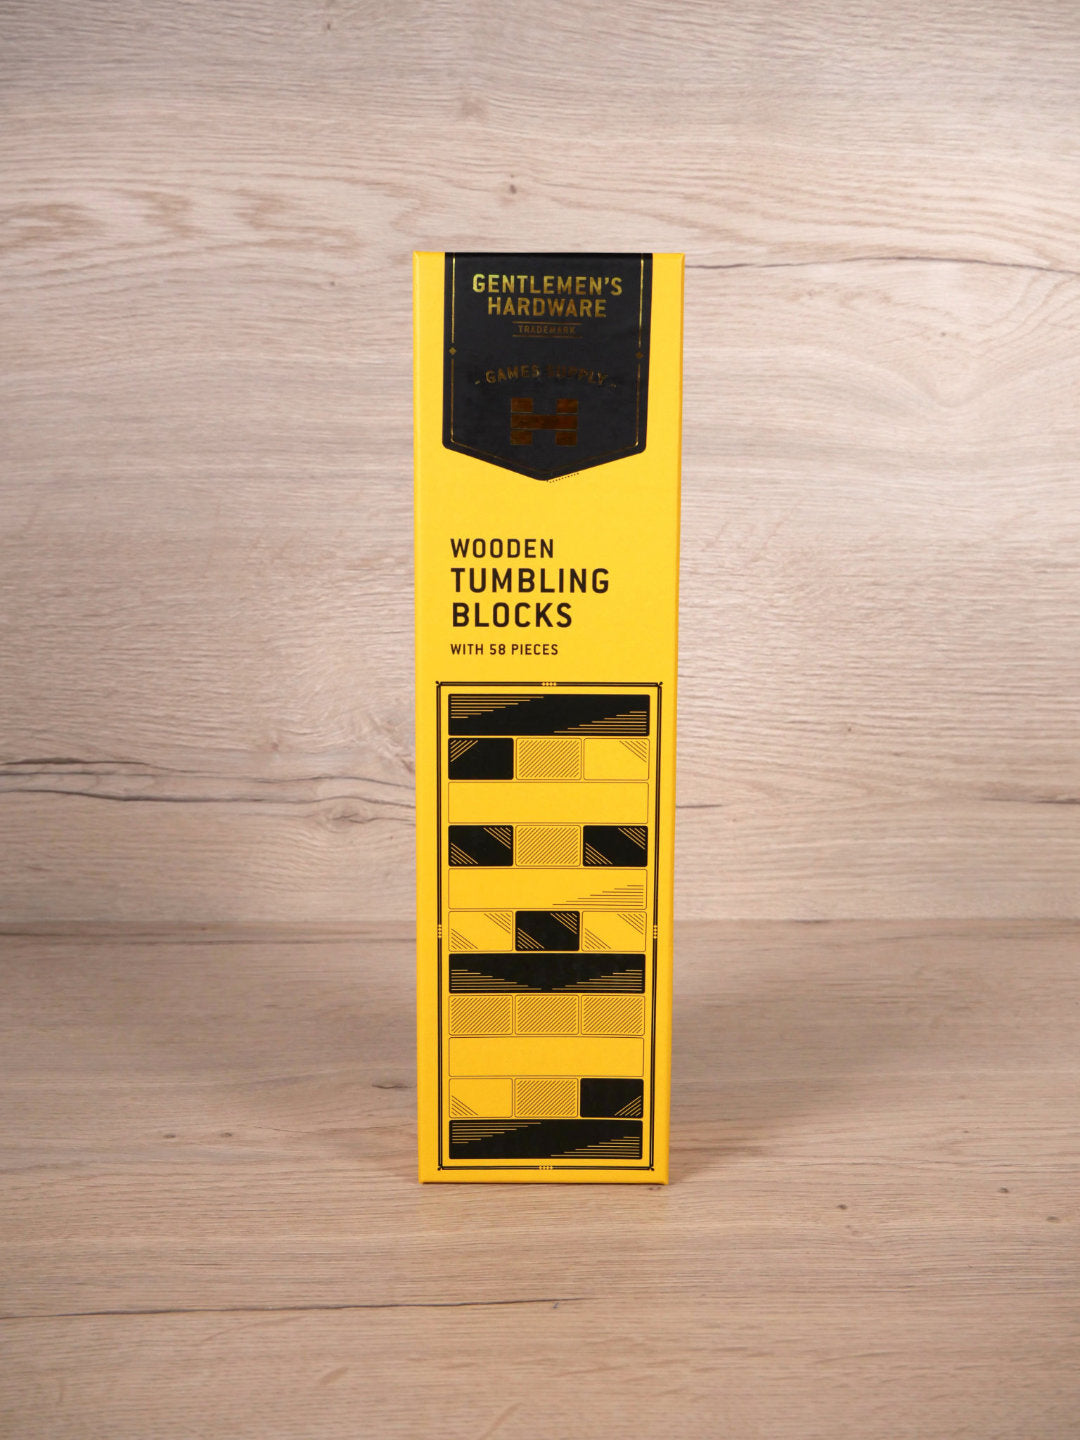 Konstruktionsspiel - Tumbling Blocks - Brettspiel - Gentlemen's Hardware